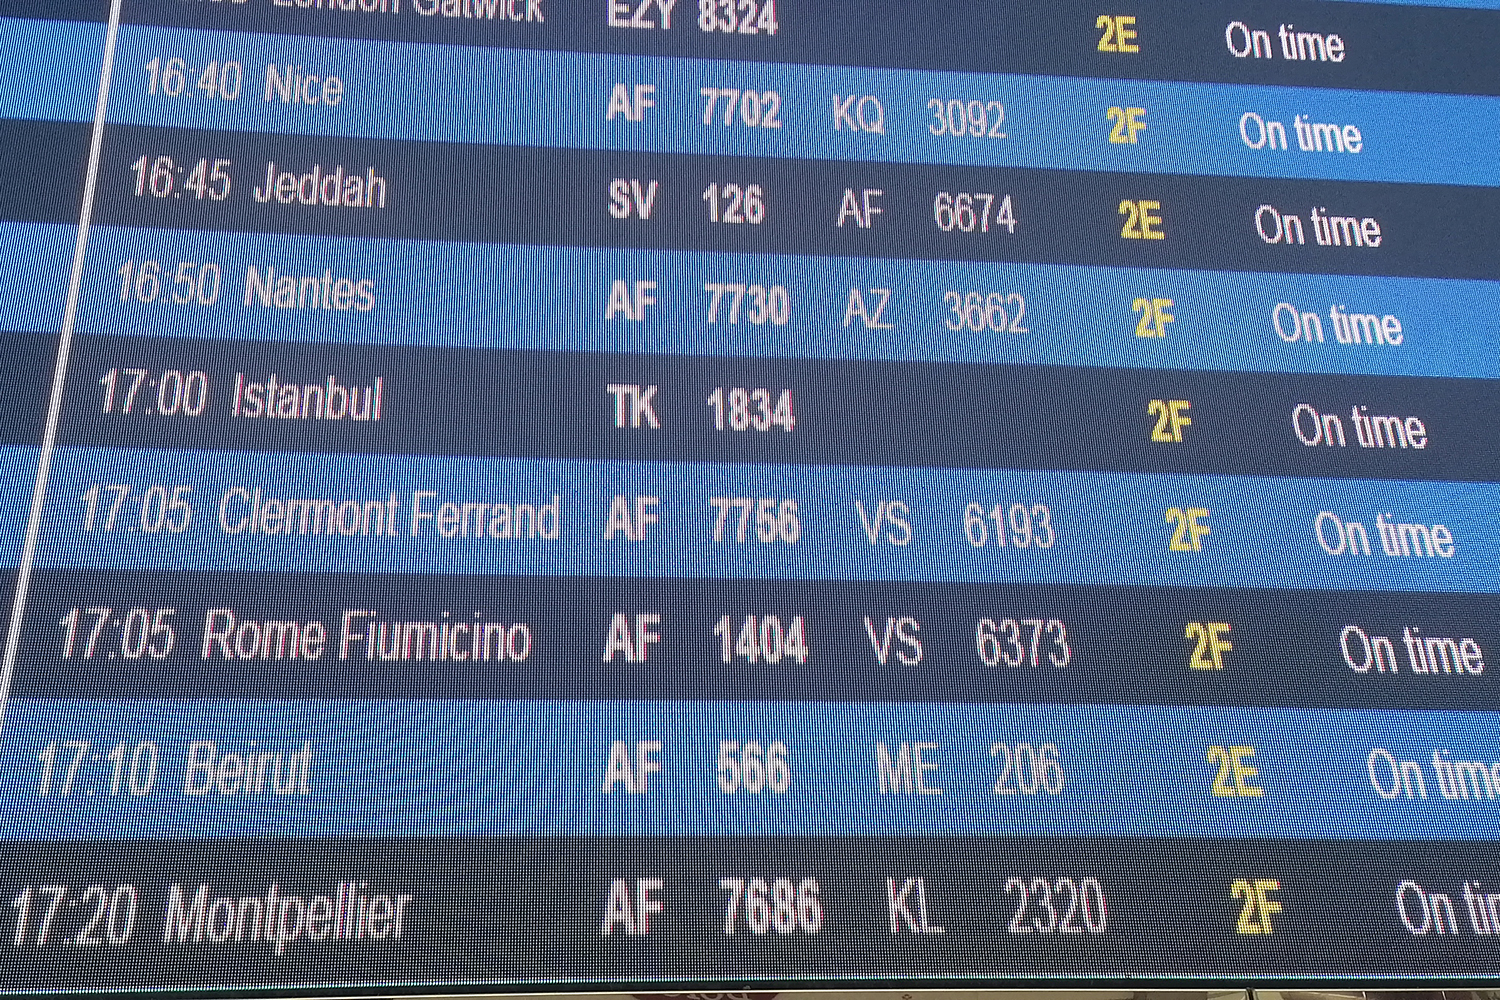 A l’arrivée de l’aéroport Roissy Charles de Gaulle, je vérifie si mon vol est bien programmé © Globe Reporters 